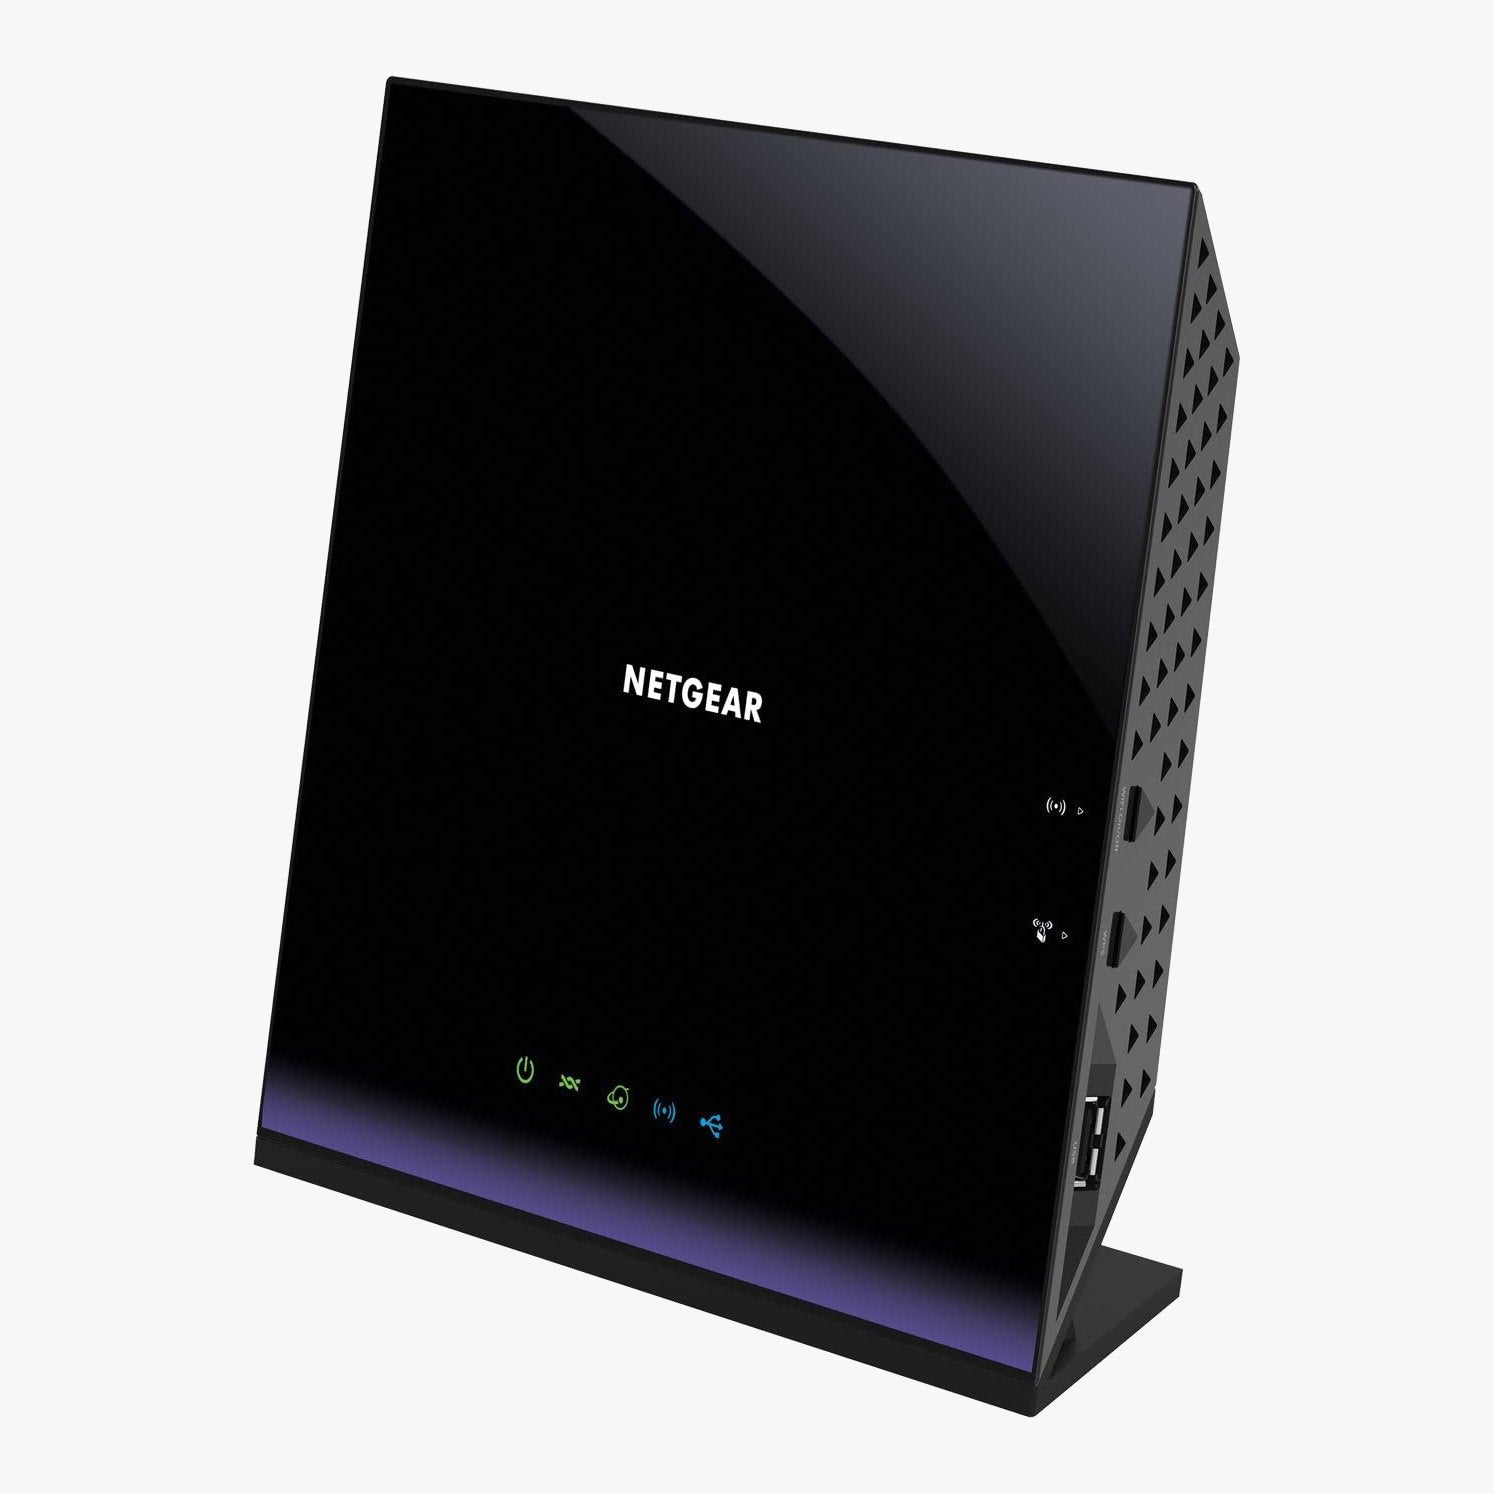 Netgear D6400 Wireless VDSL Modem